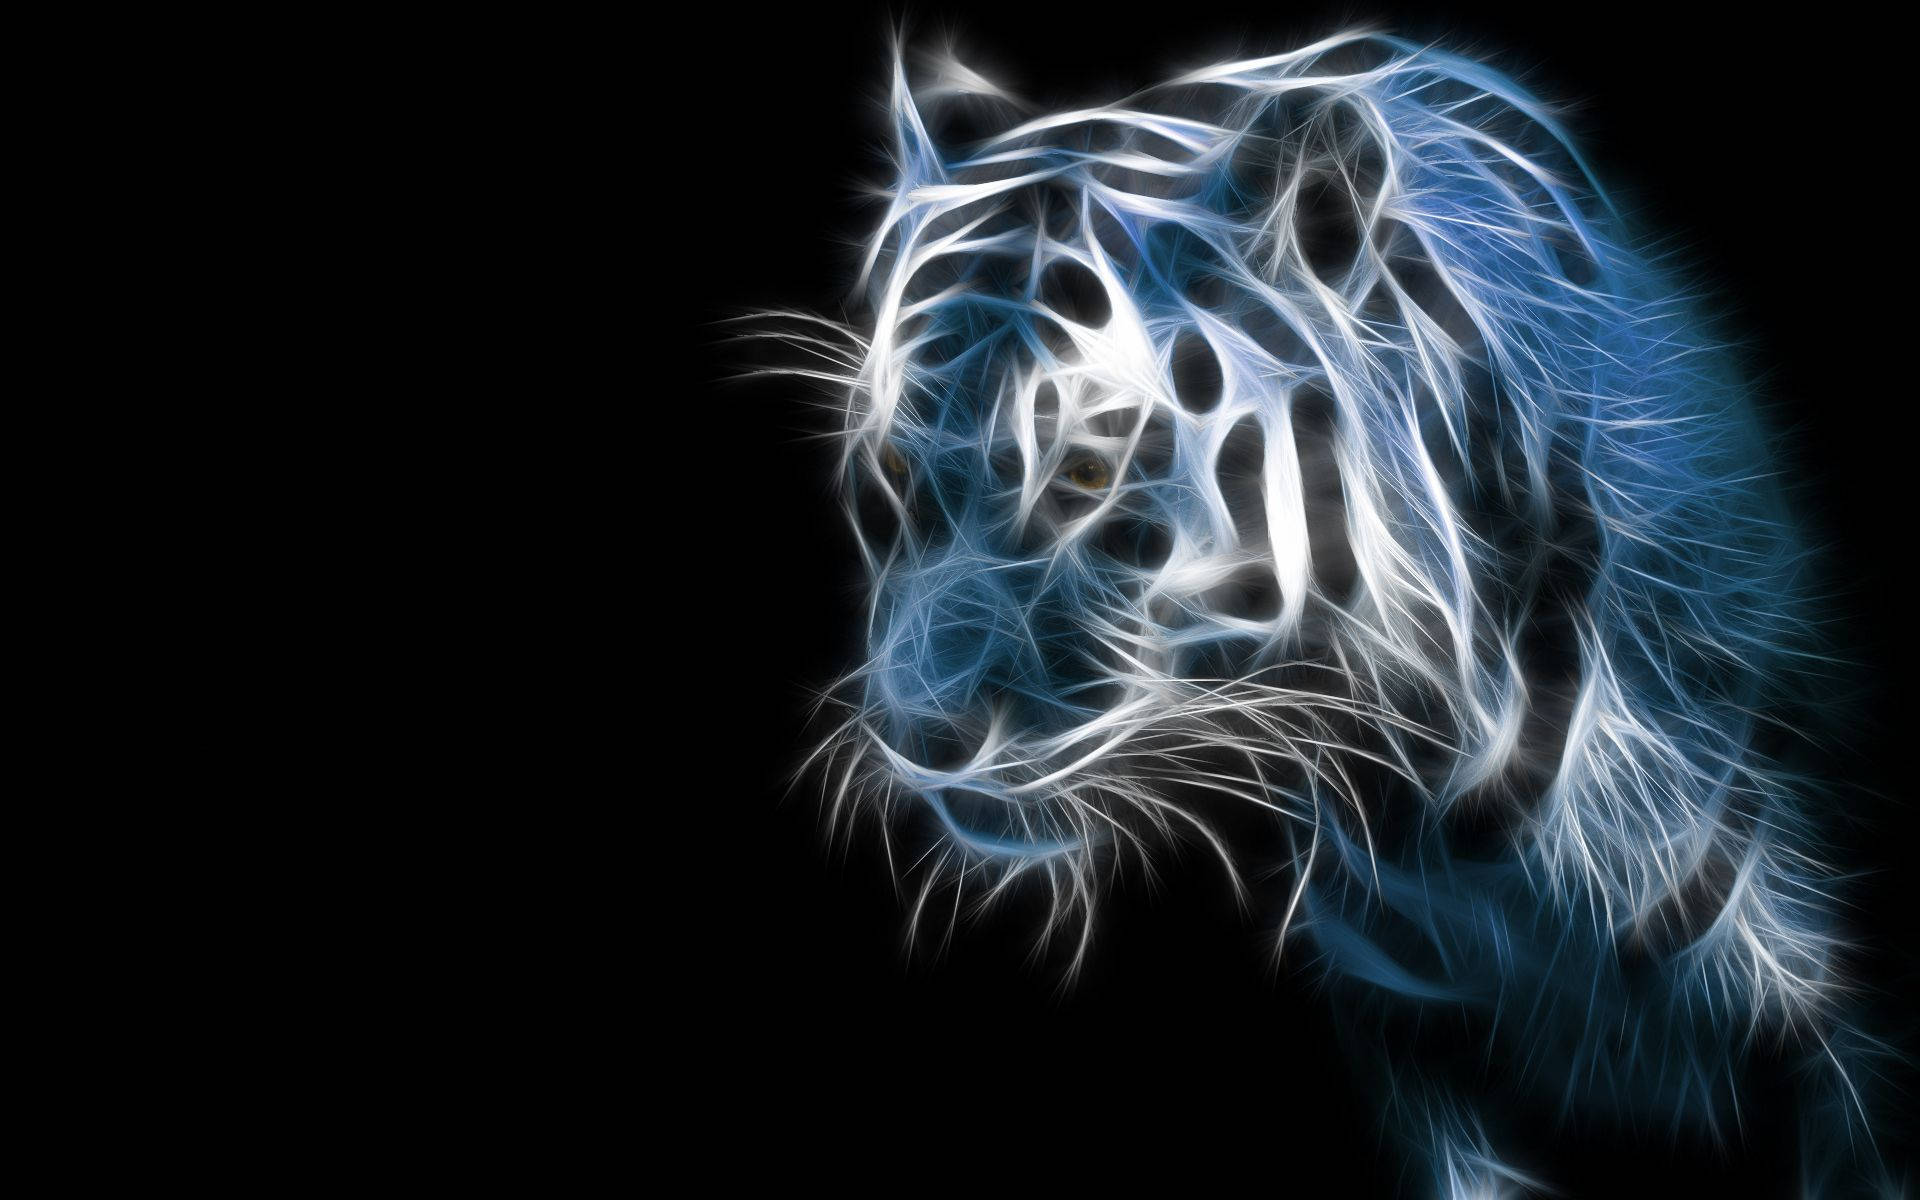 tiger wallpaper hd 1080p